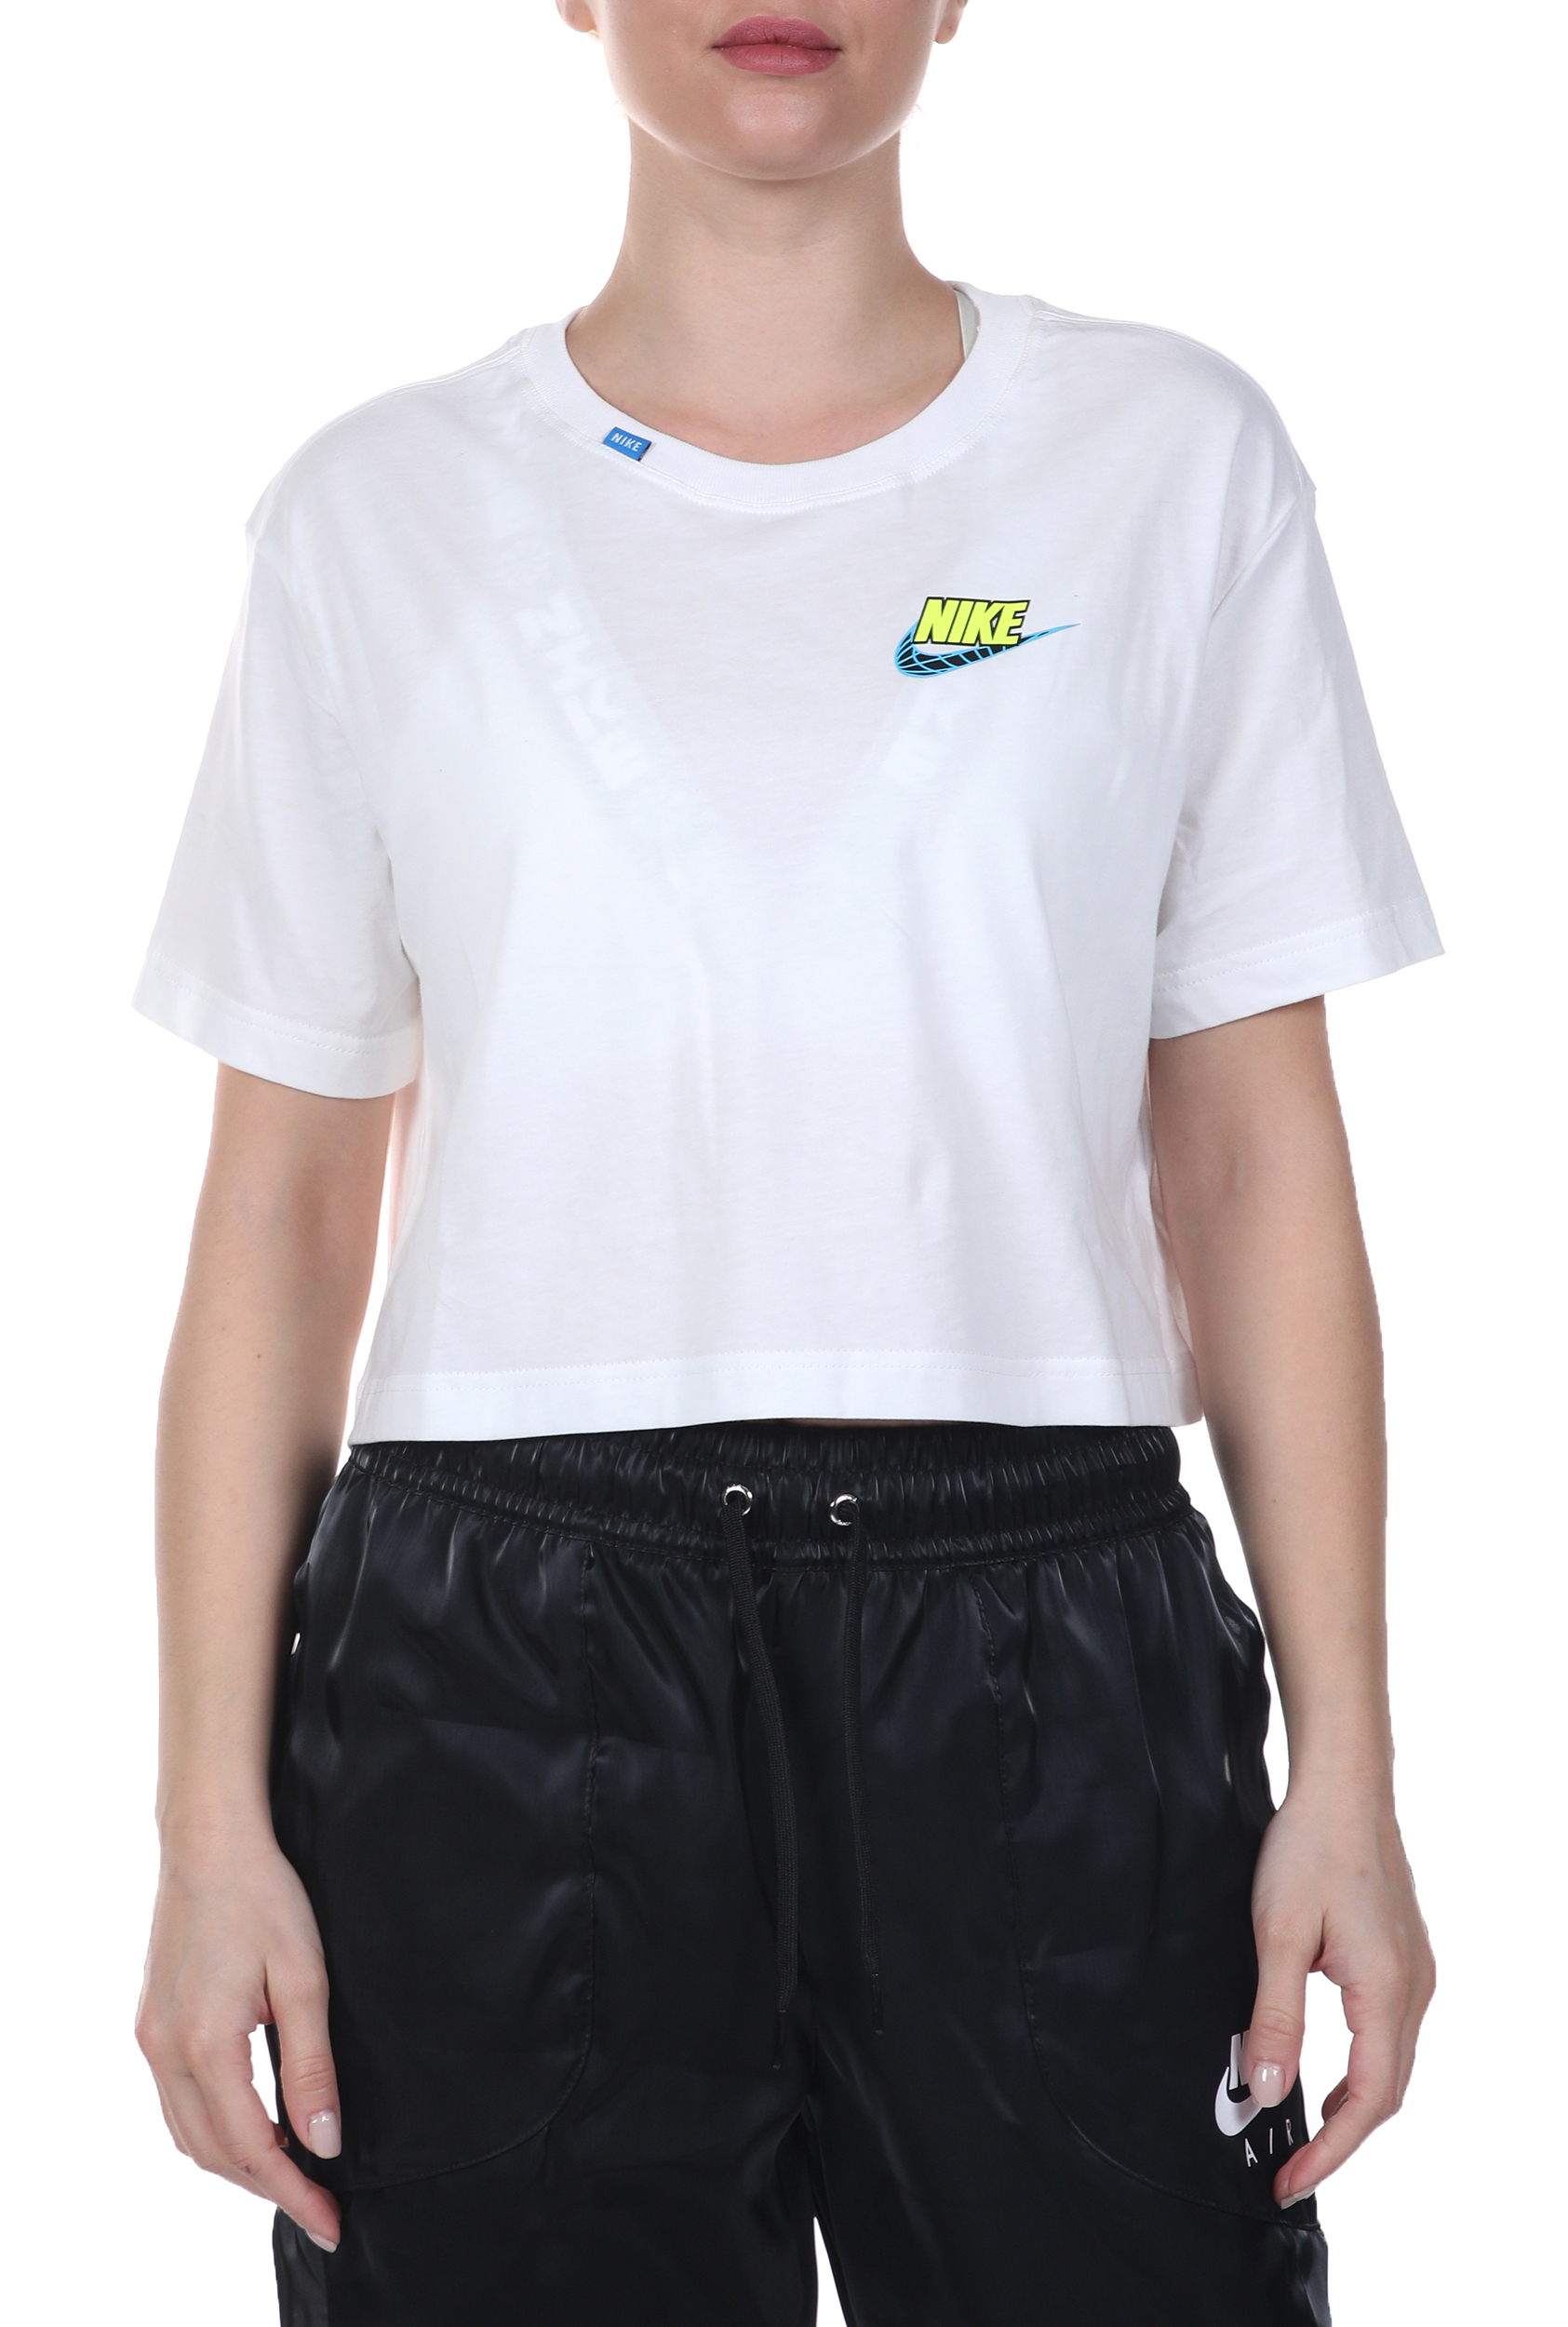 Γυναικεία/Ρούχα/Αθλητικά/T-shirt-Τοπ NIKE - Γυναικείο cropped top NIKE NSW TEE WORLDWIDE 2 CROP λευκό